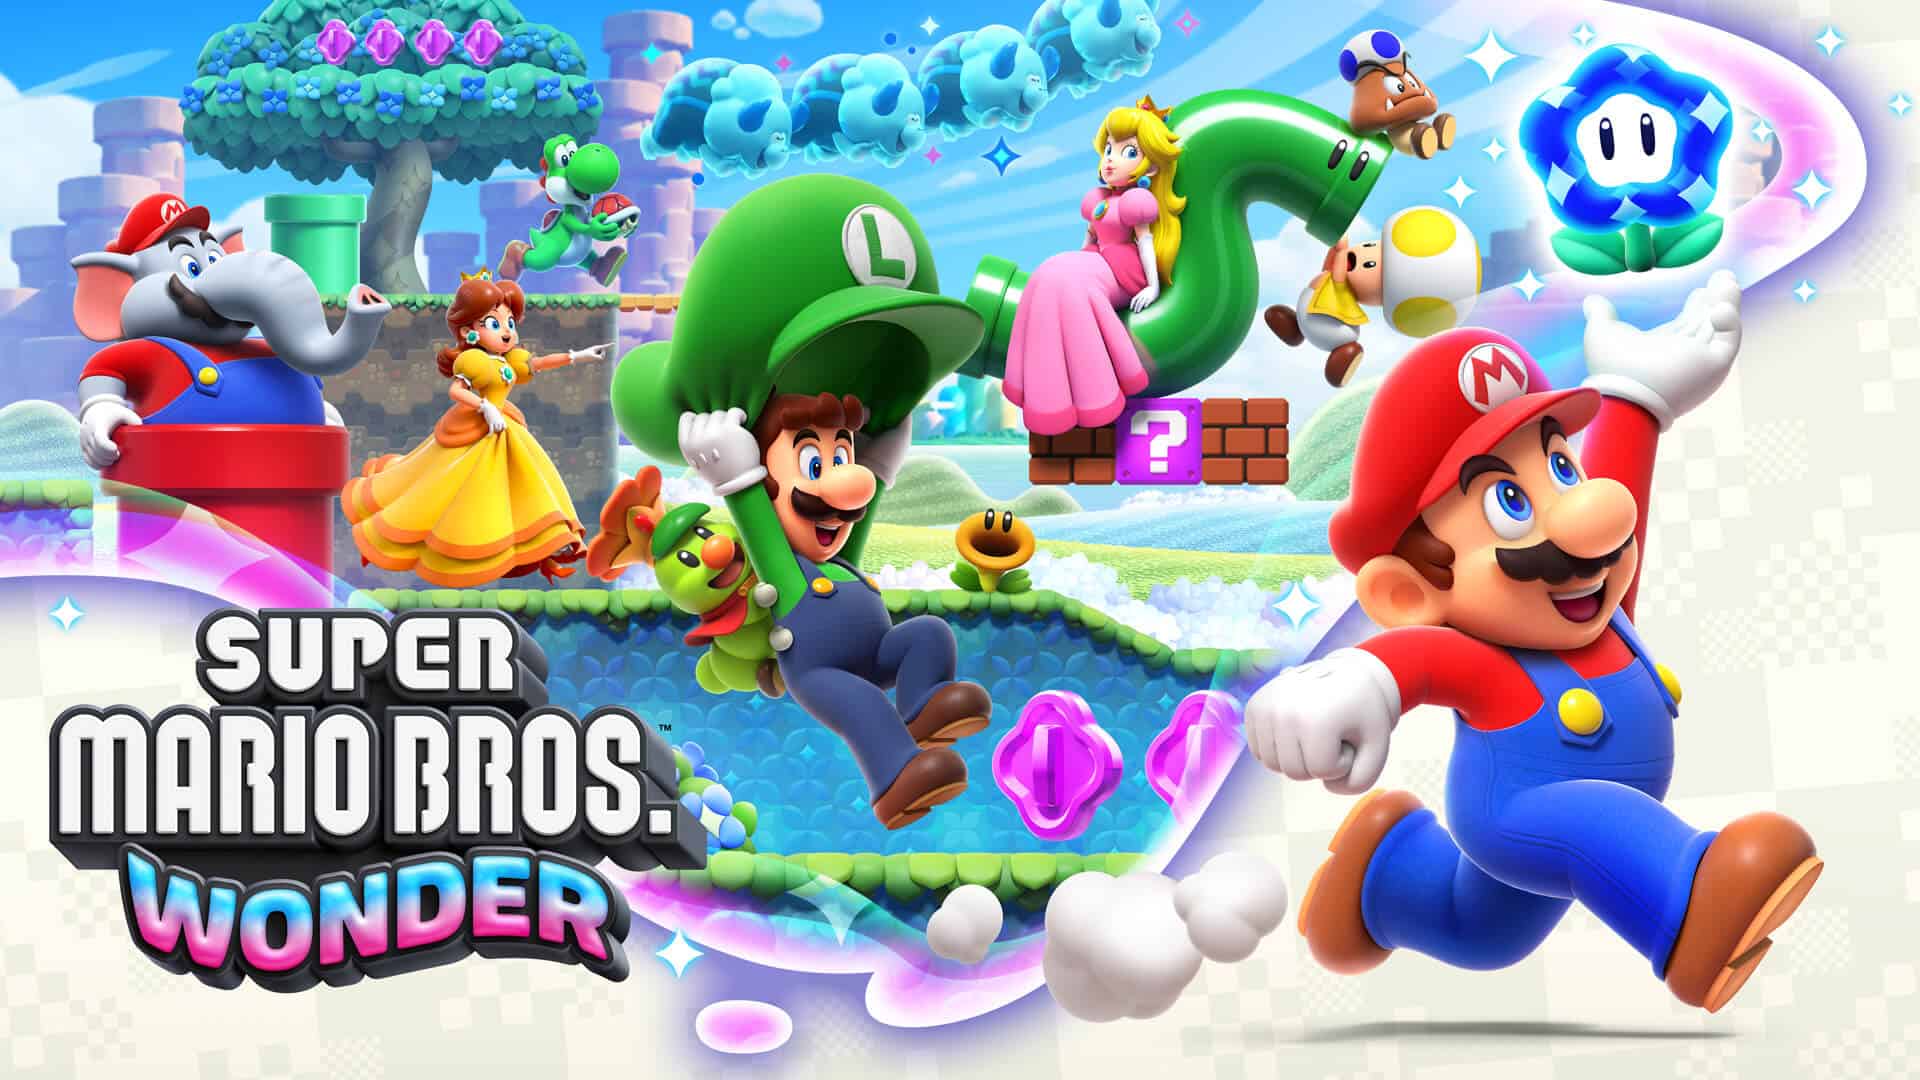 Na Balada do Mario Bros: Novo Super Mario é anunciado para PlayStation 4